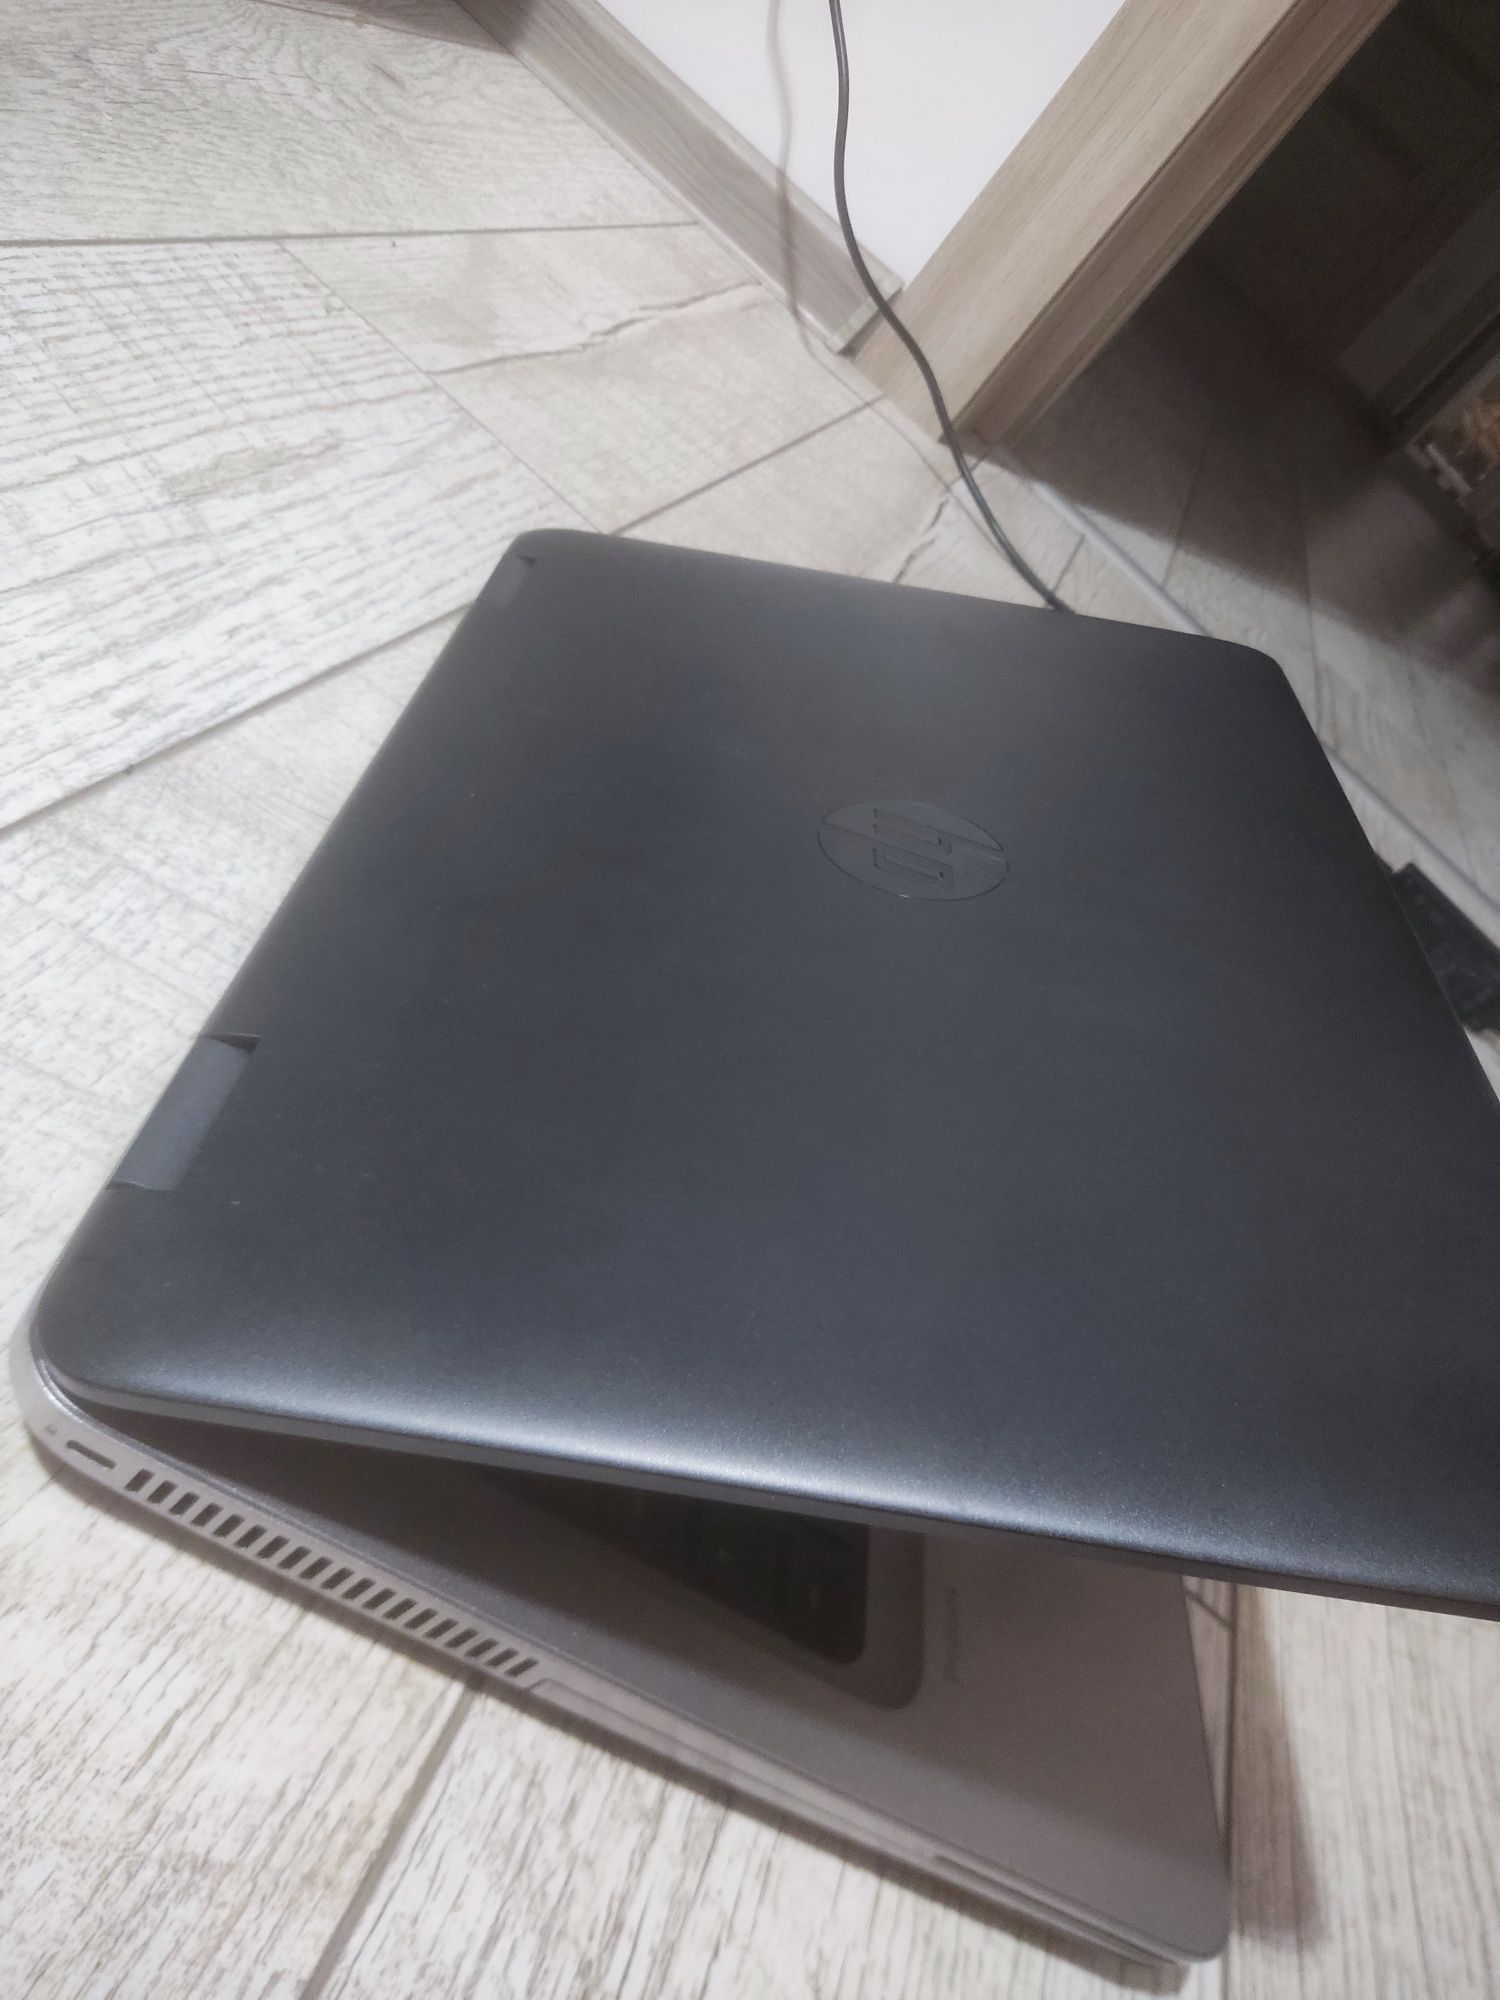 HP Probook 640 G3 İ5-7200 CPU